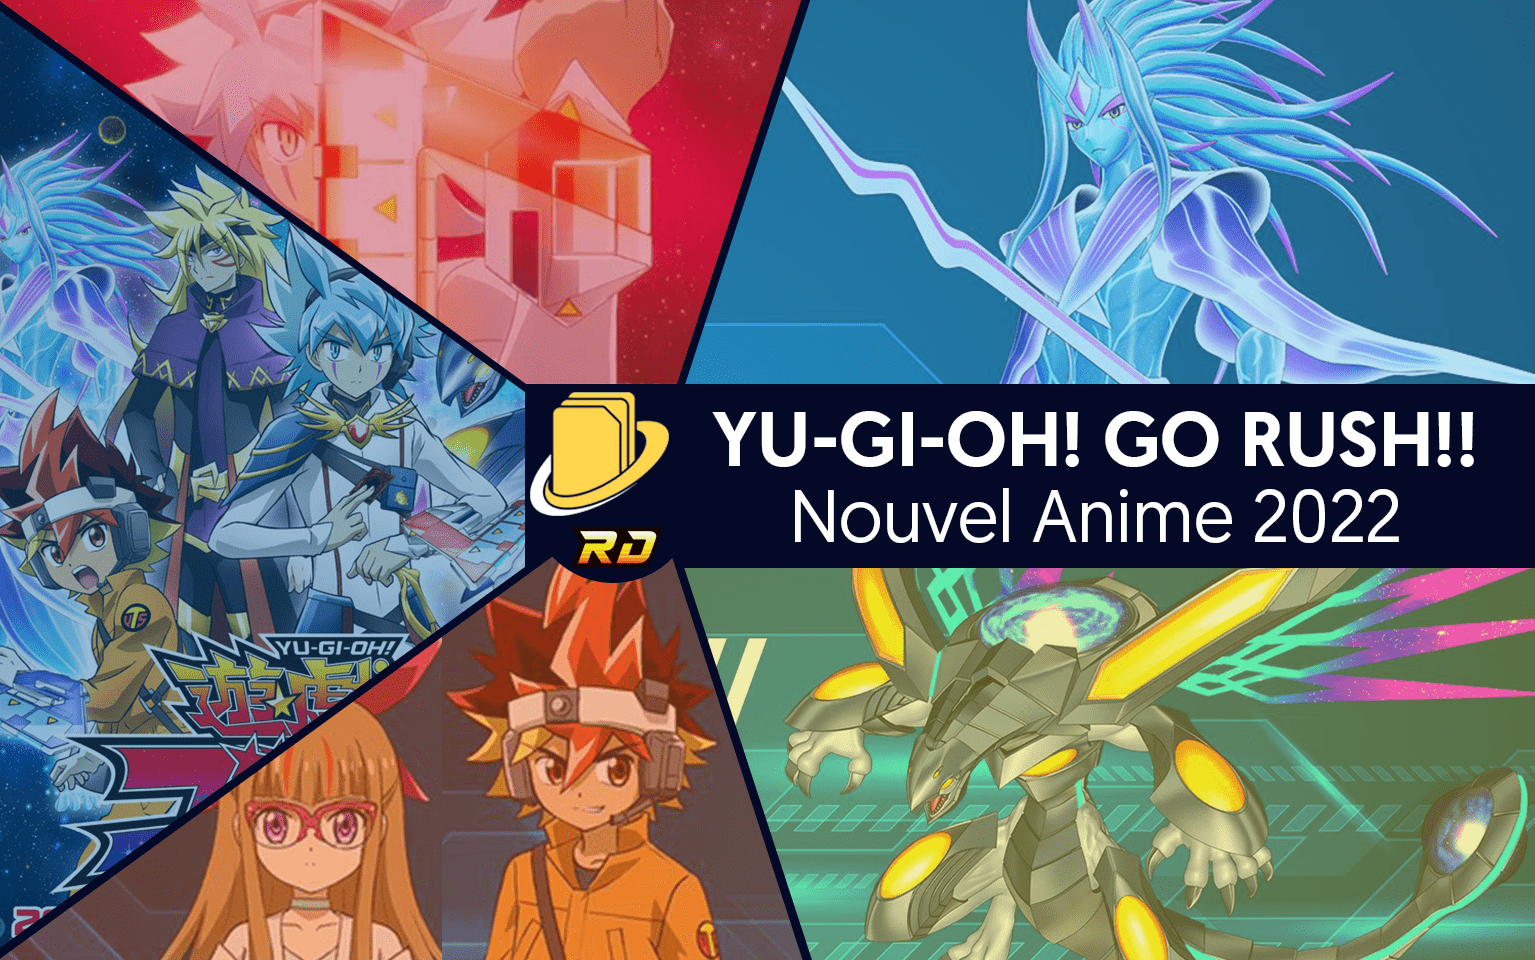 Nouvel Anime en 2022 : Yu-Gi-Oh! GO RUSH!! - Yuginews